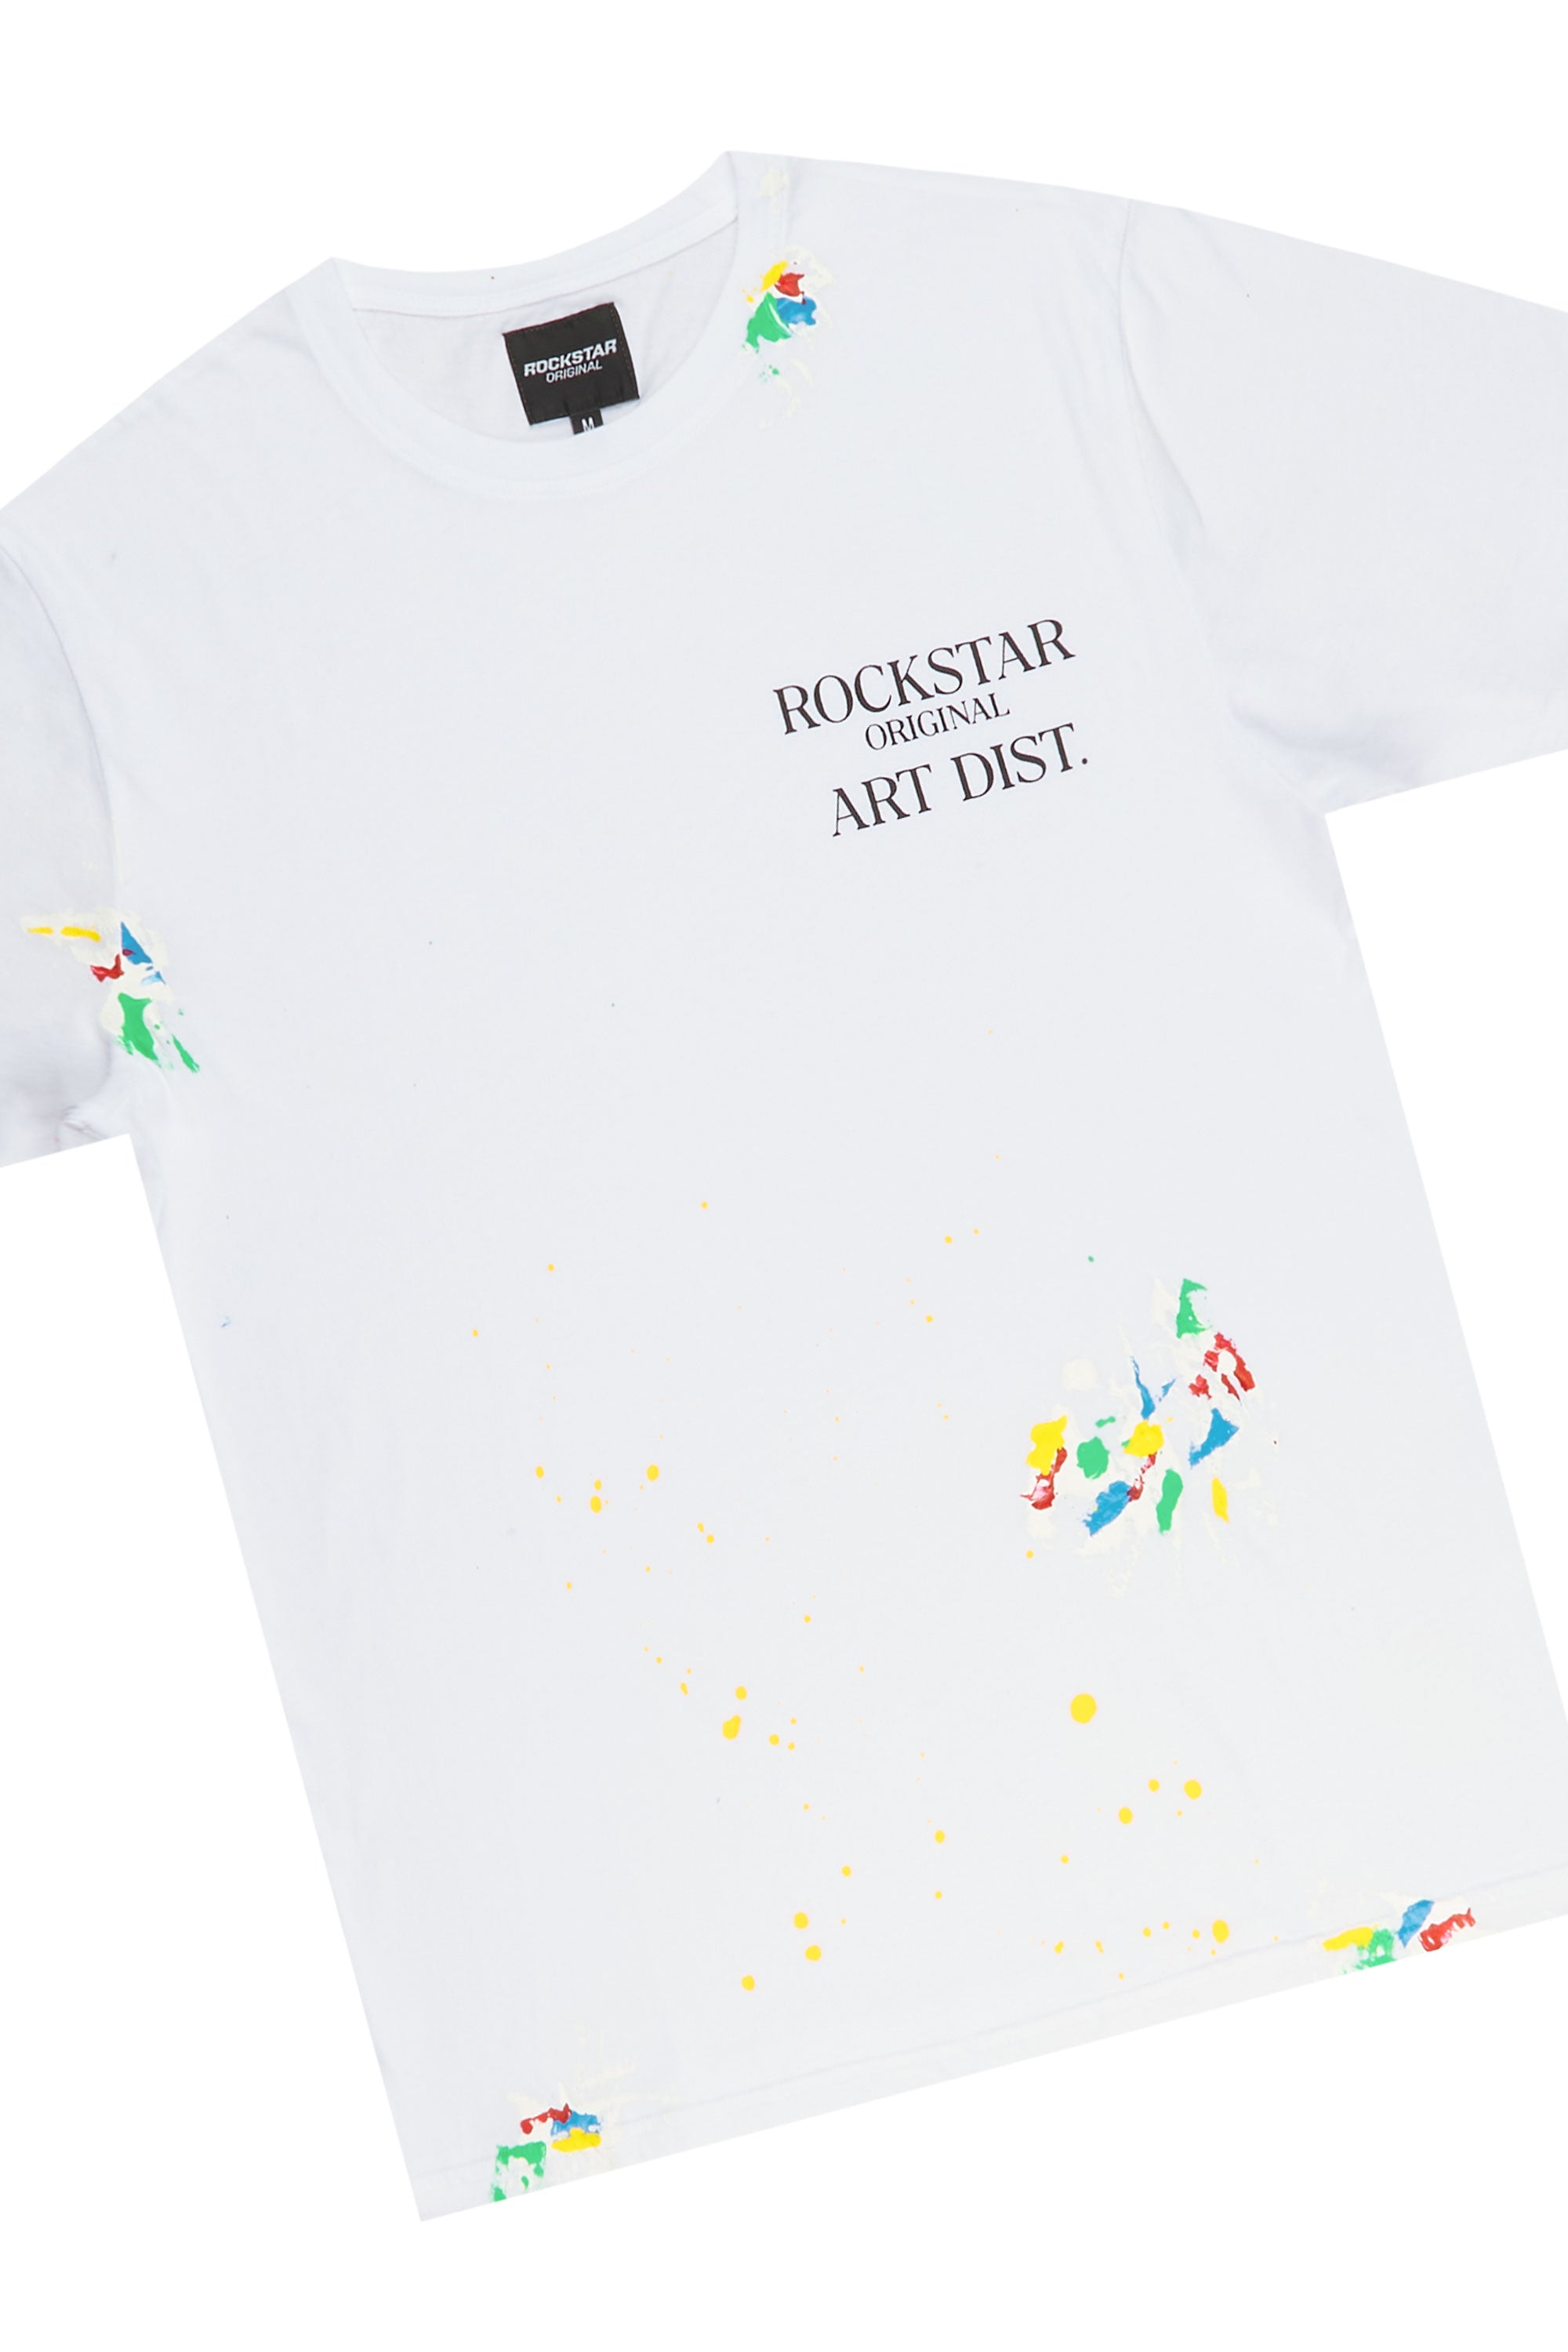 Rockstar Art Dist. White T-Shirt Short Set